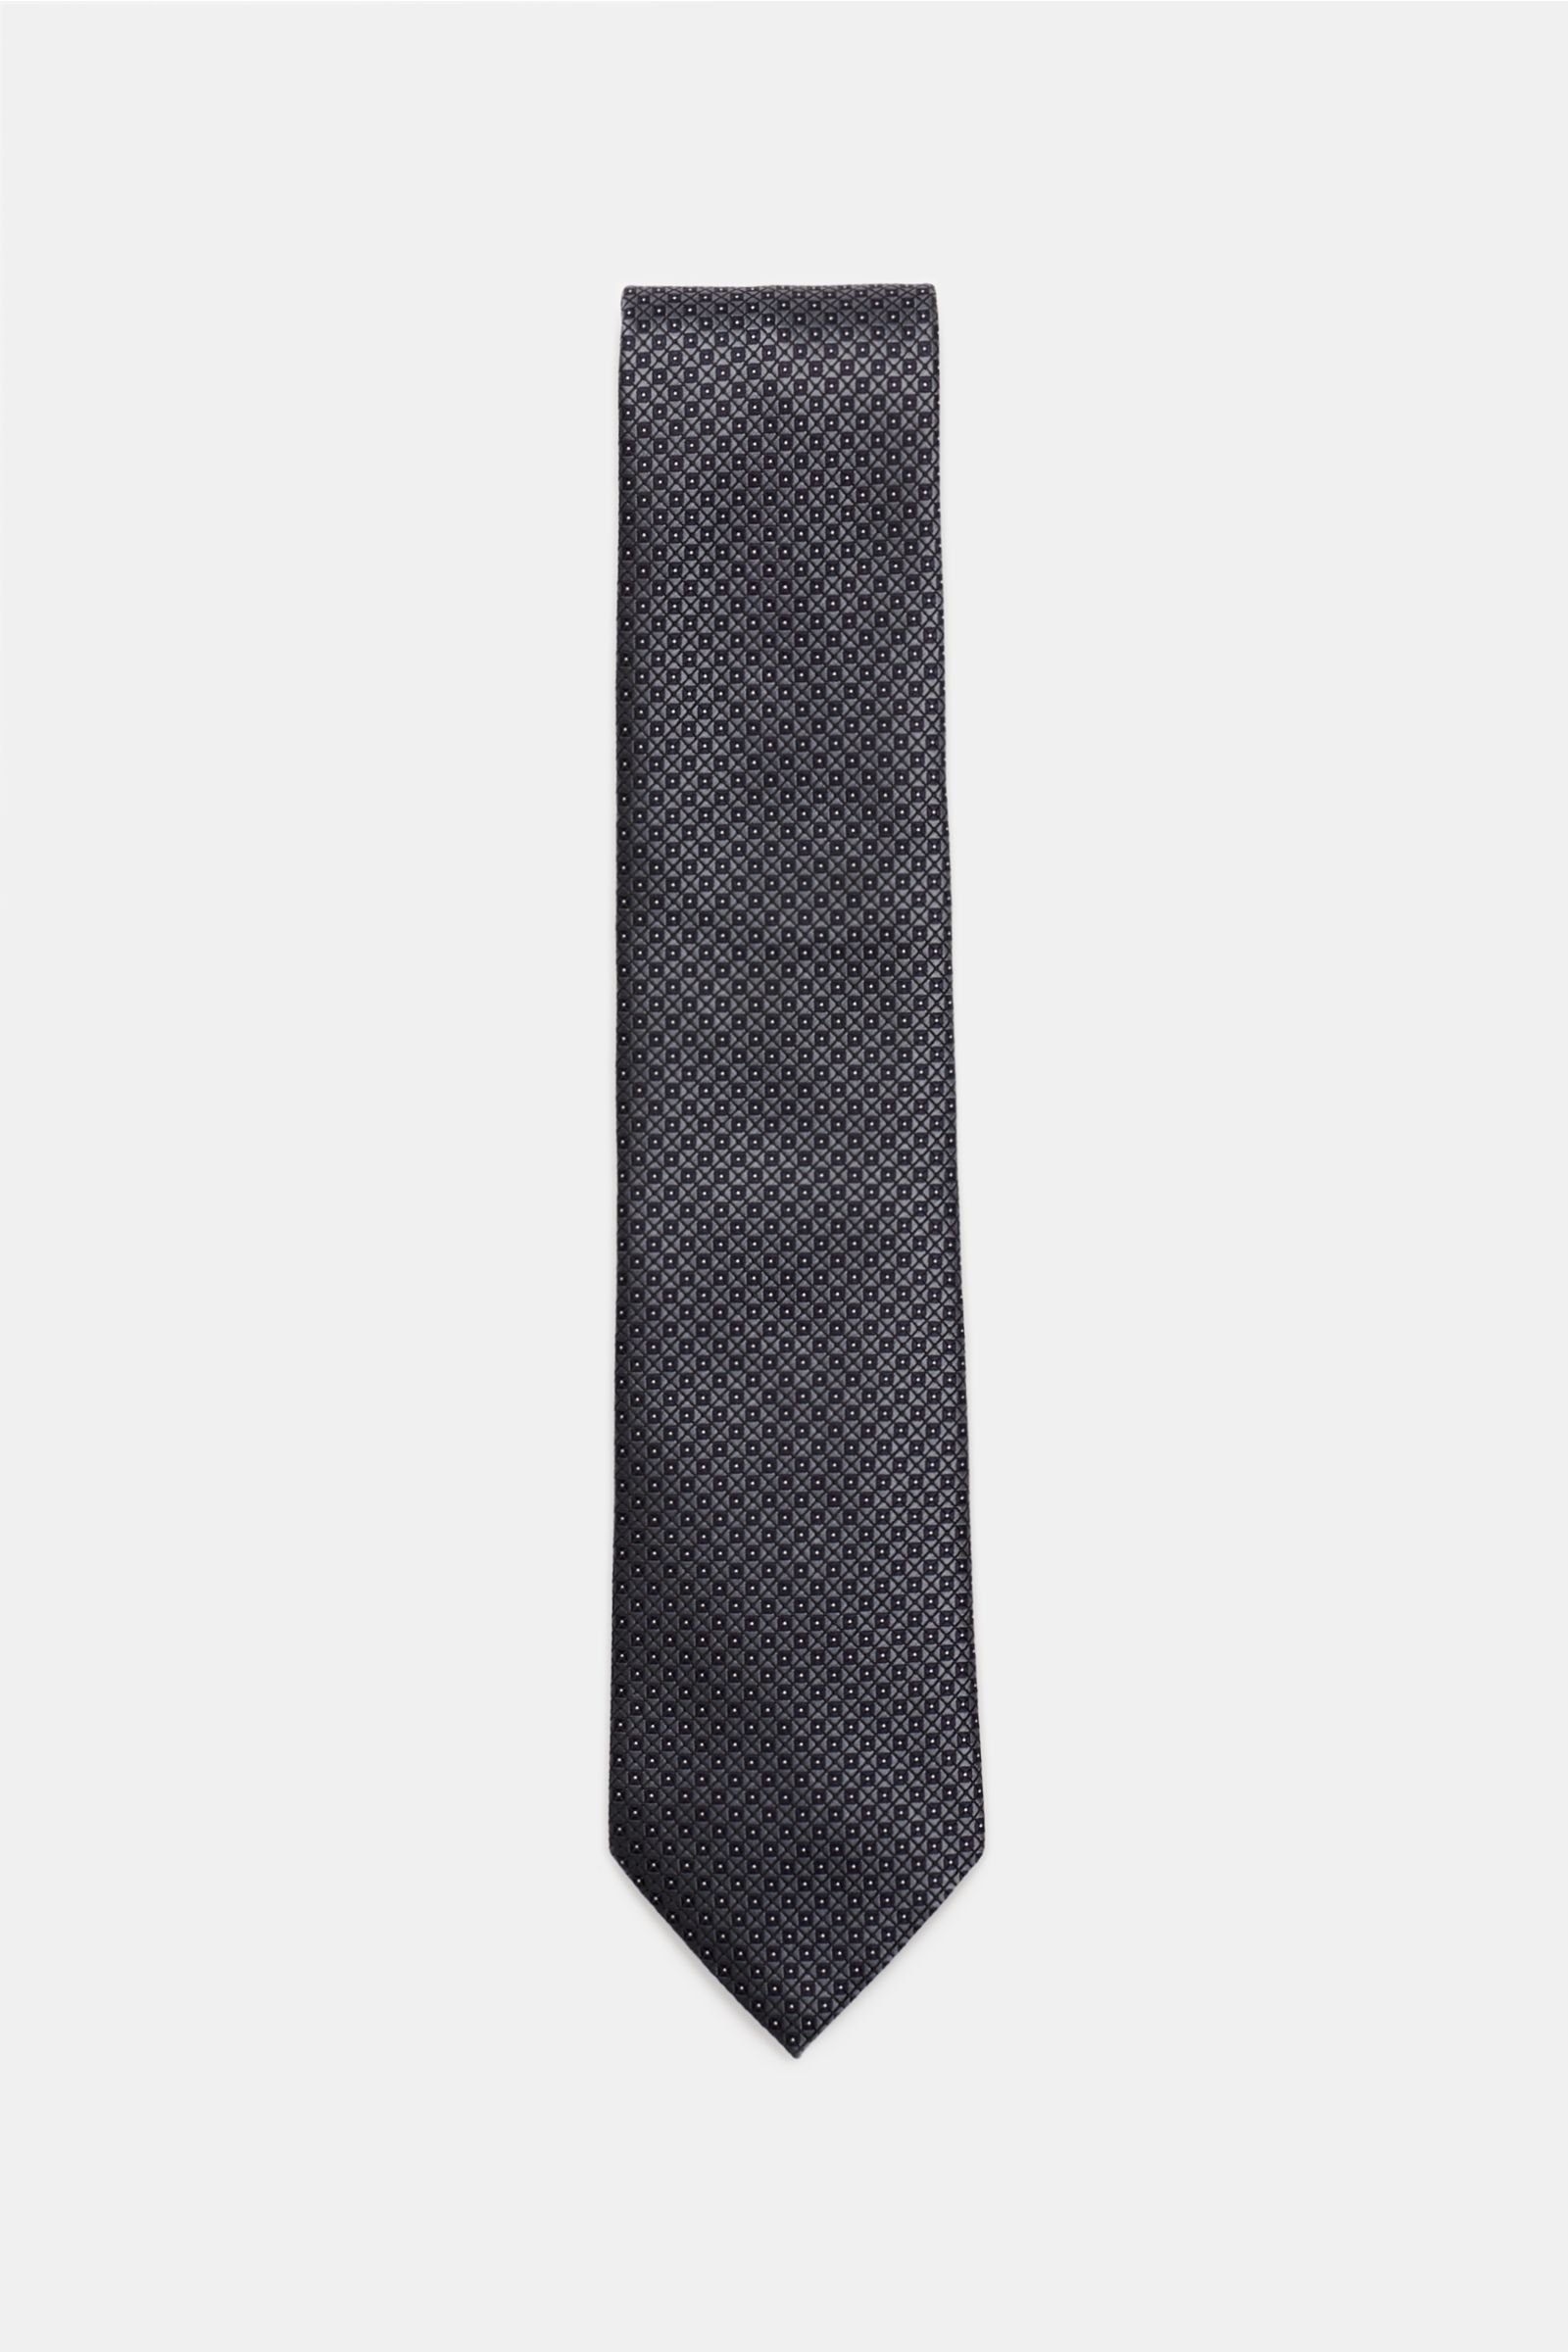 Silk tie dark grey/black patterned